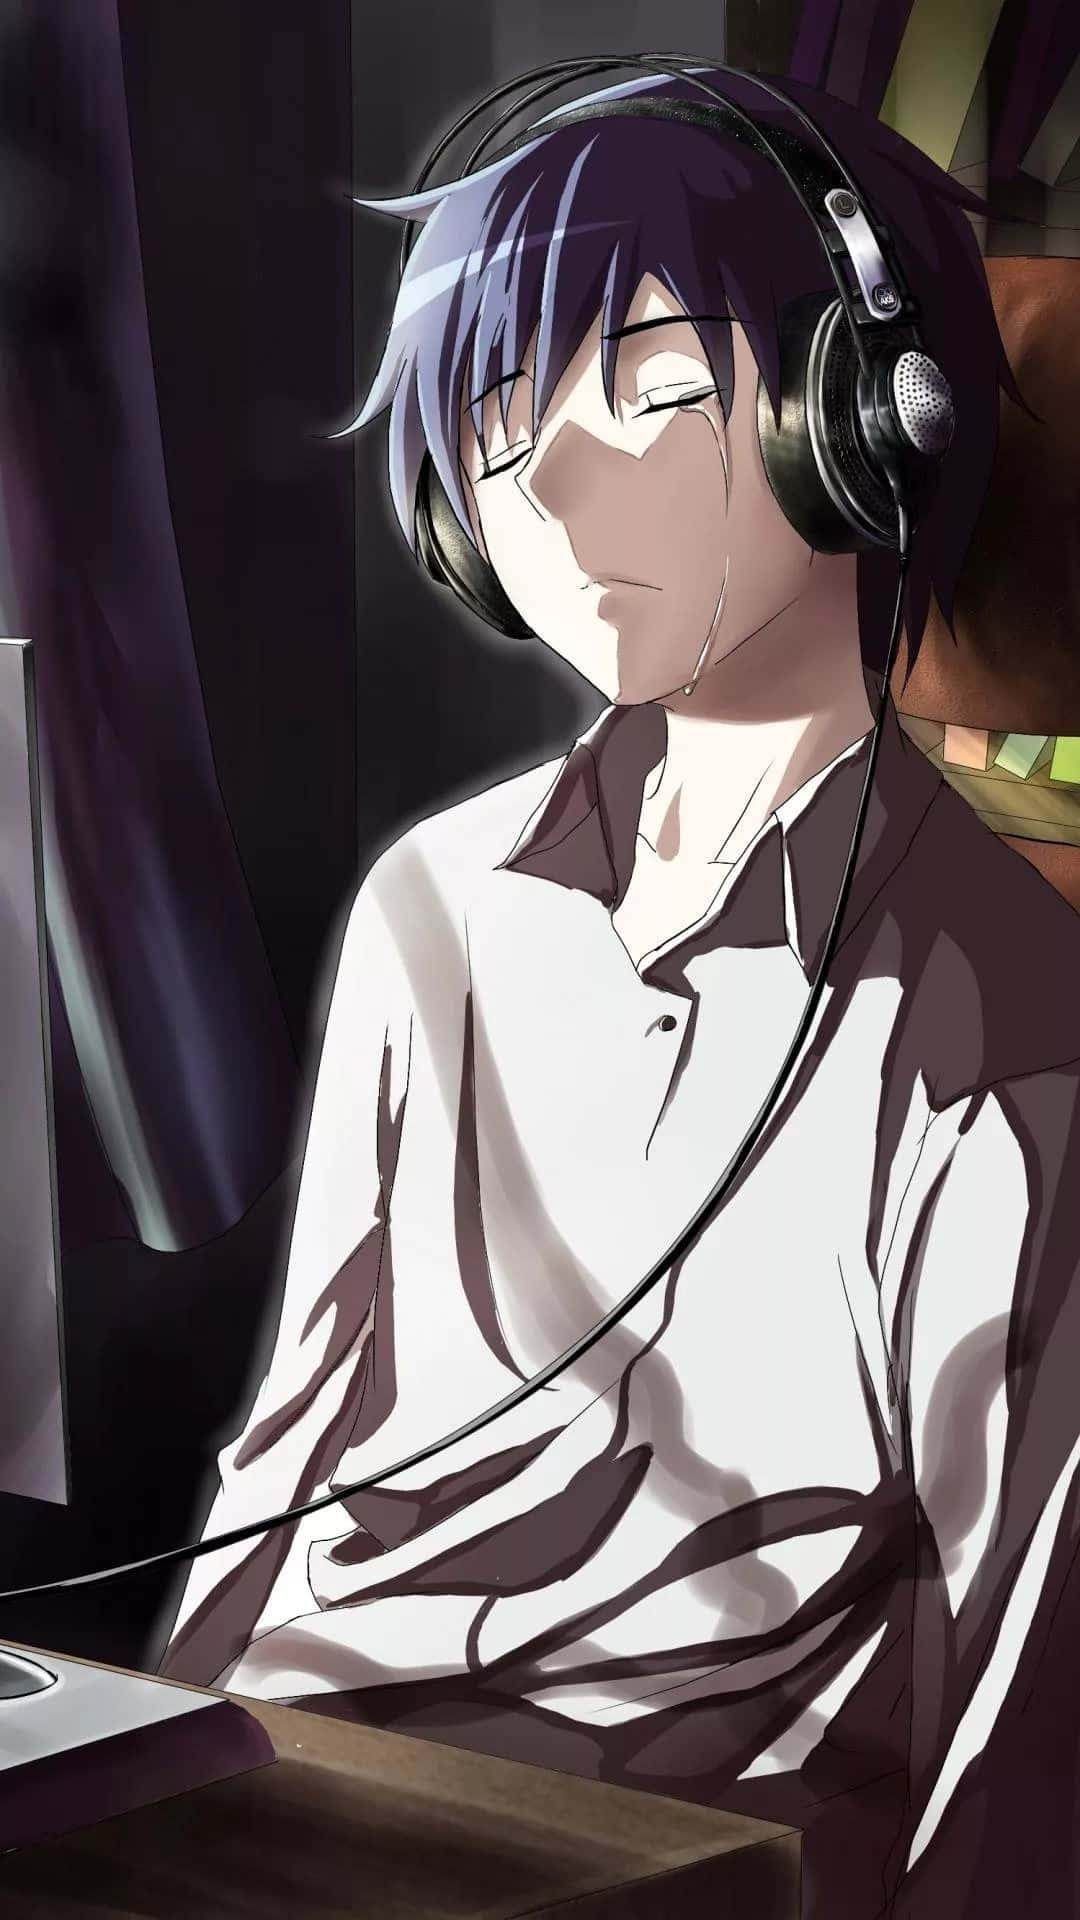 Sad Depressing Anime Haruka Nanase Crying Headphones